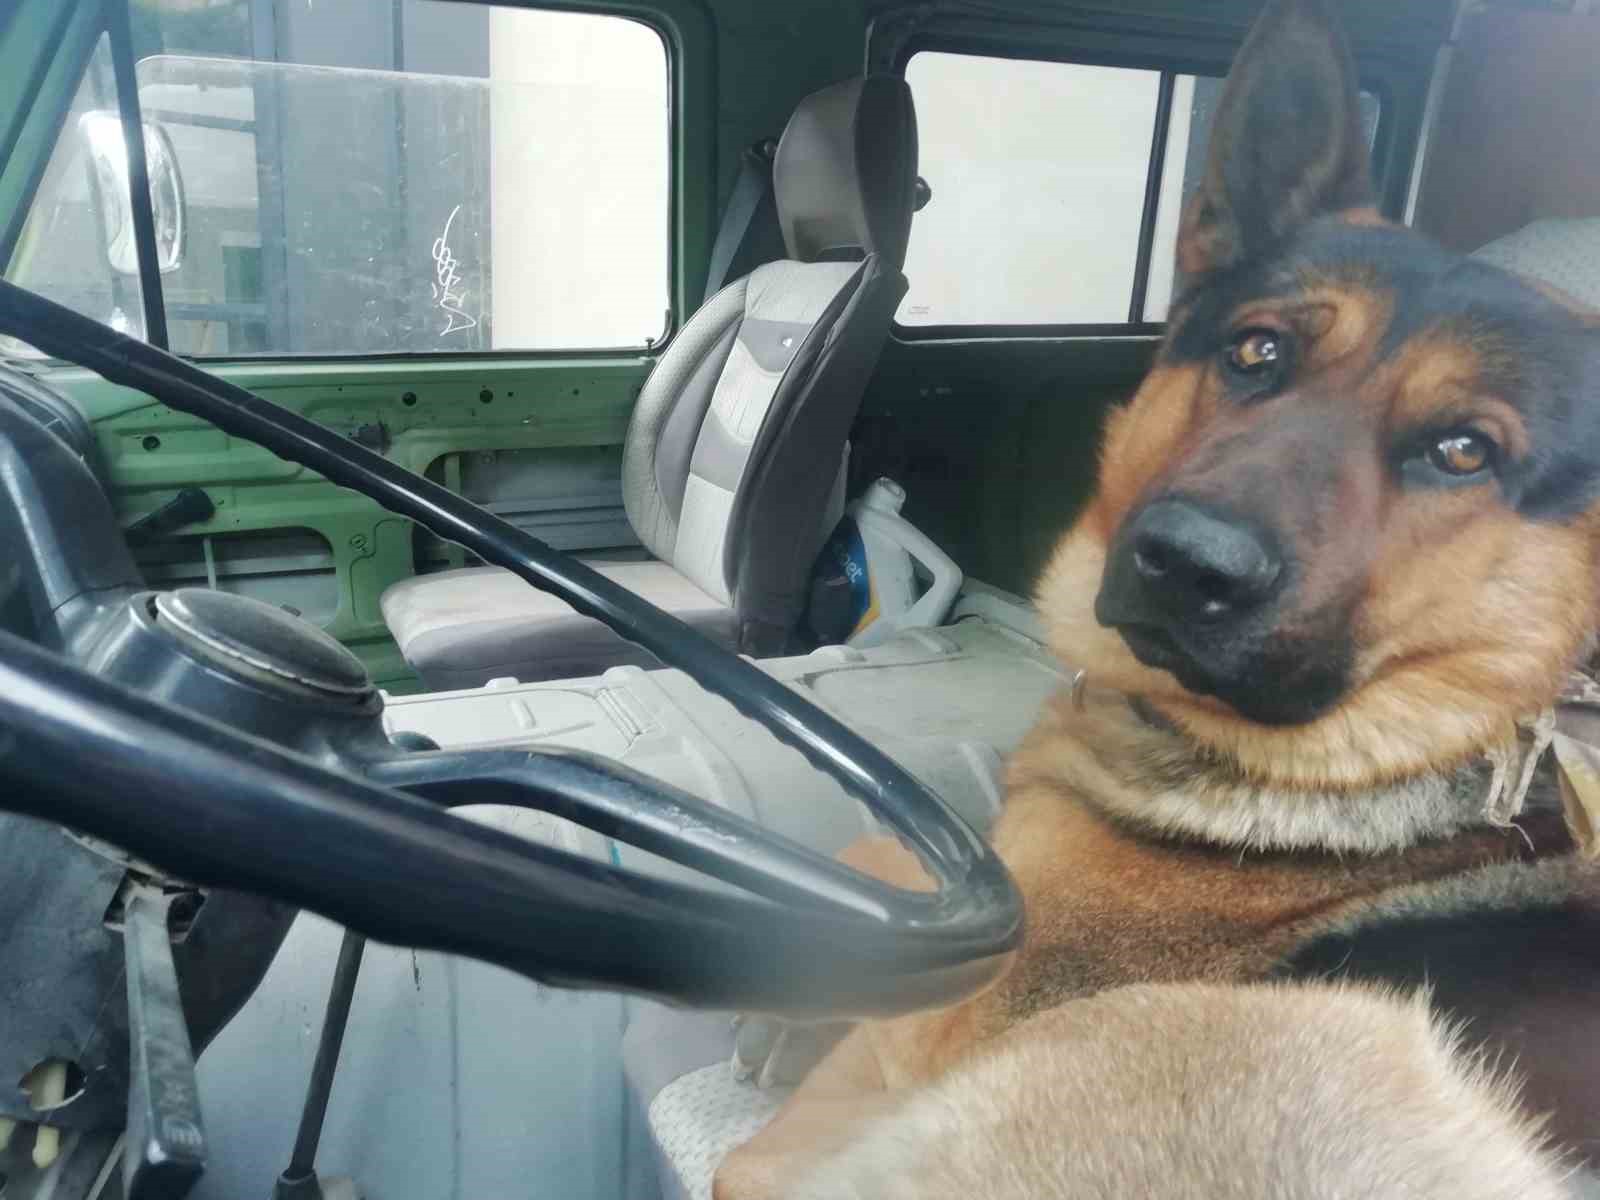 Her sabah şoför koltuğunda bekleyen sevimli köpek merak konusu oldu